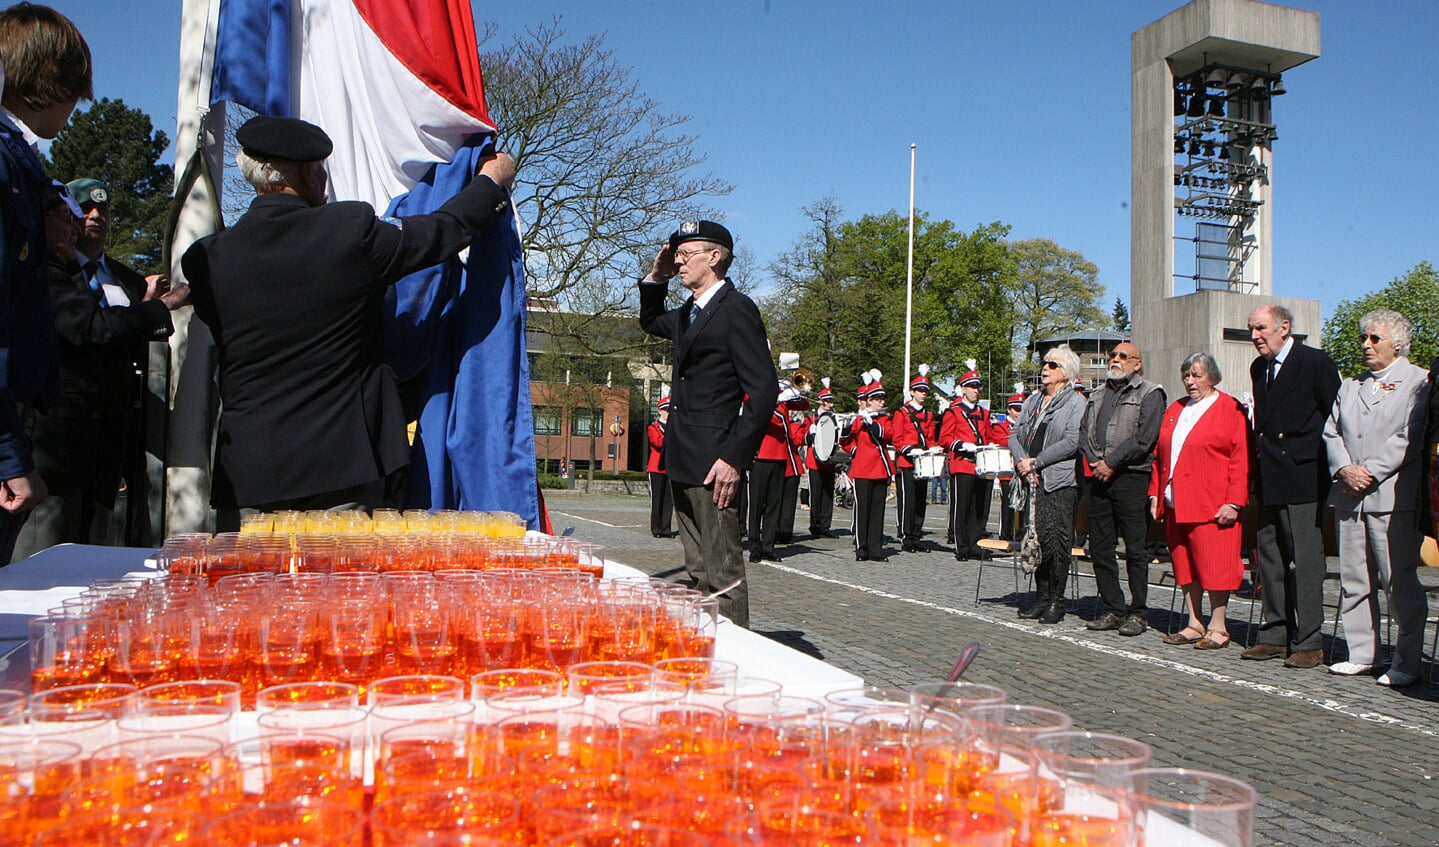 De vlaggenparade op het raadhuisplein, de officiele start van Kop